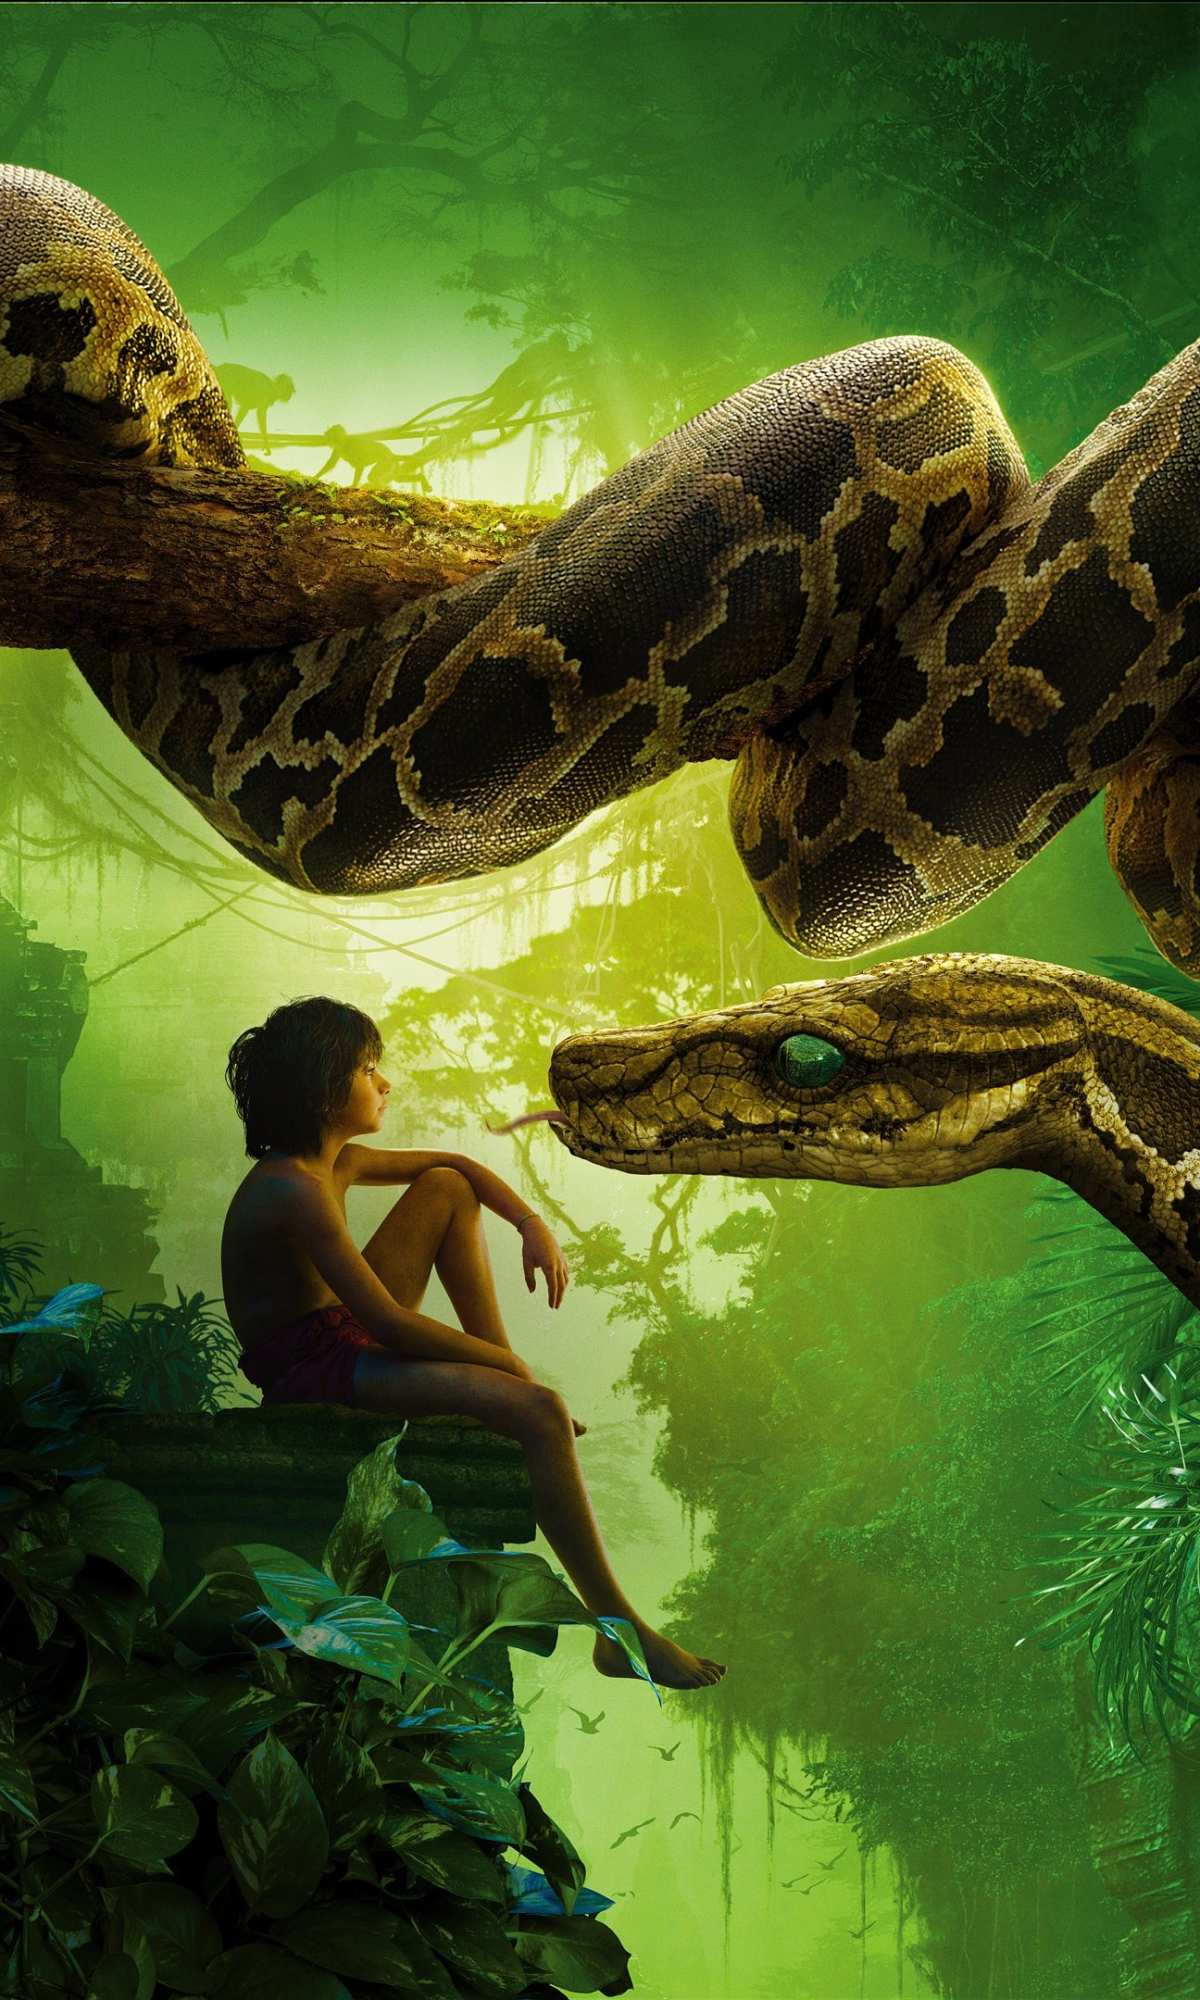 mowgli, movie, the jungle book (2016), snake, kaa (jungle book), the jungle book